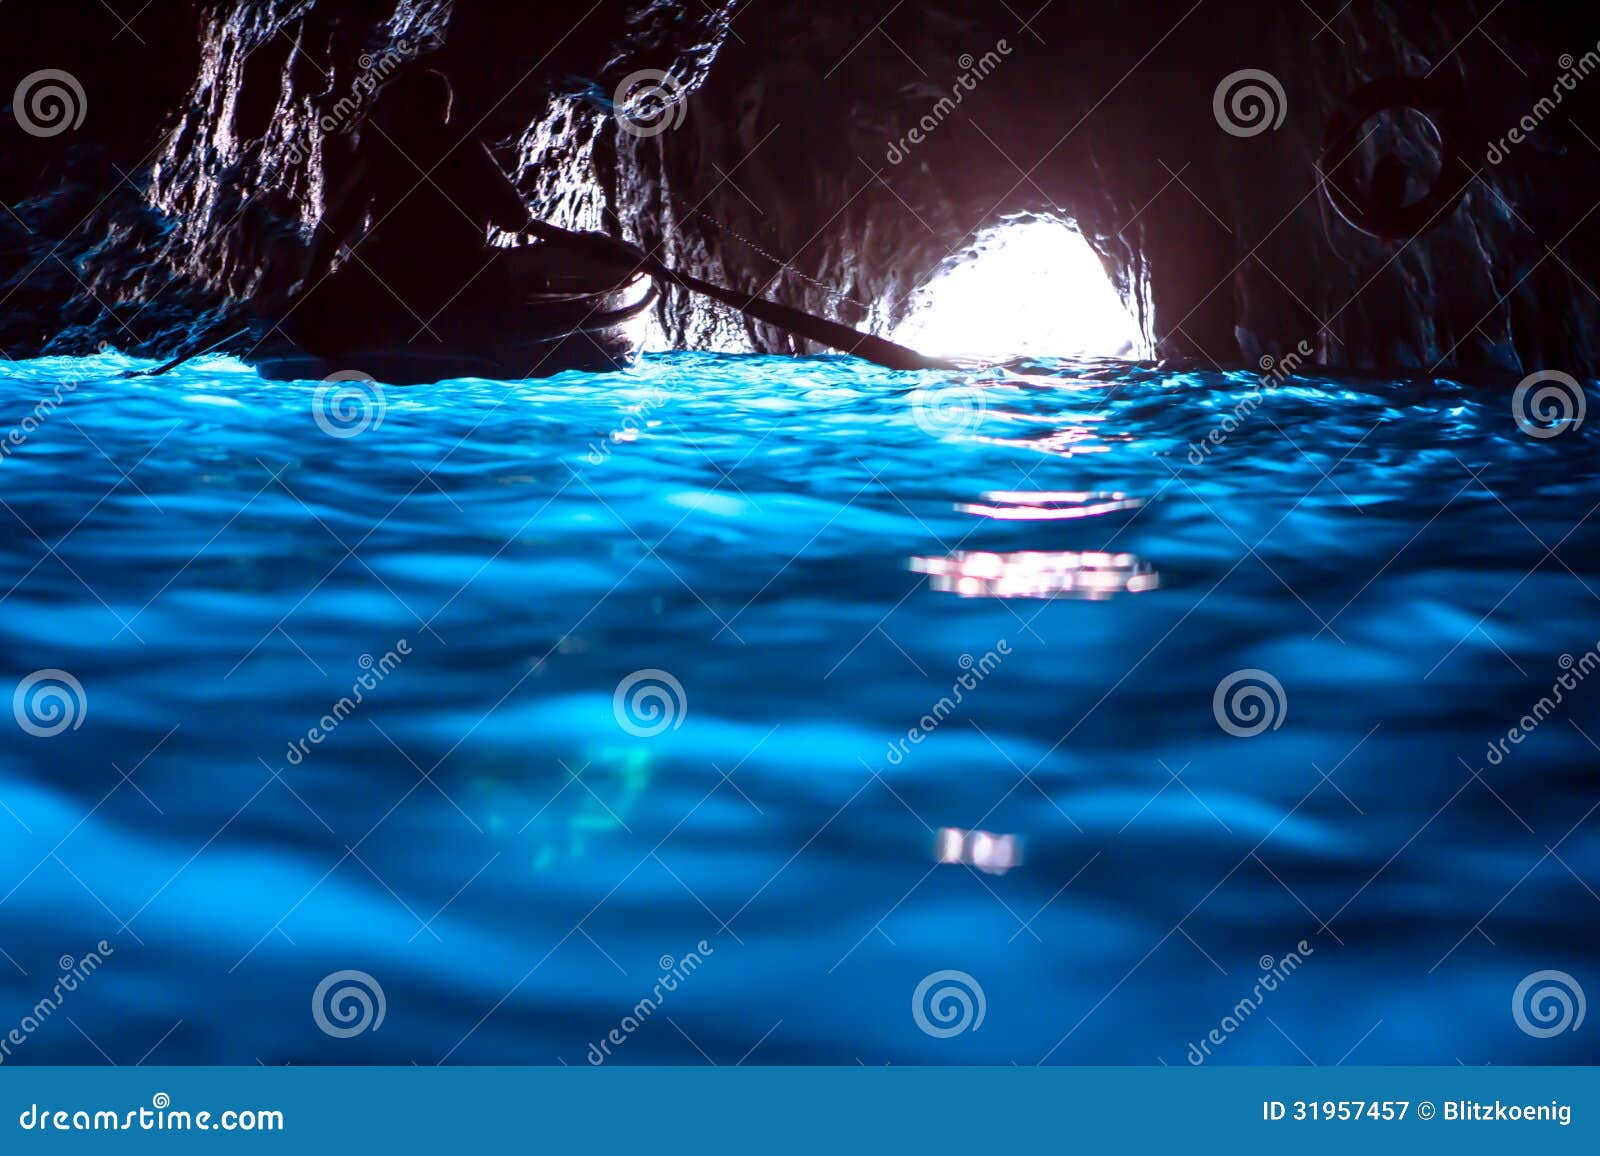 blue grotto (capri)